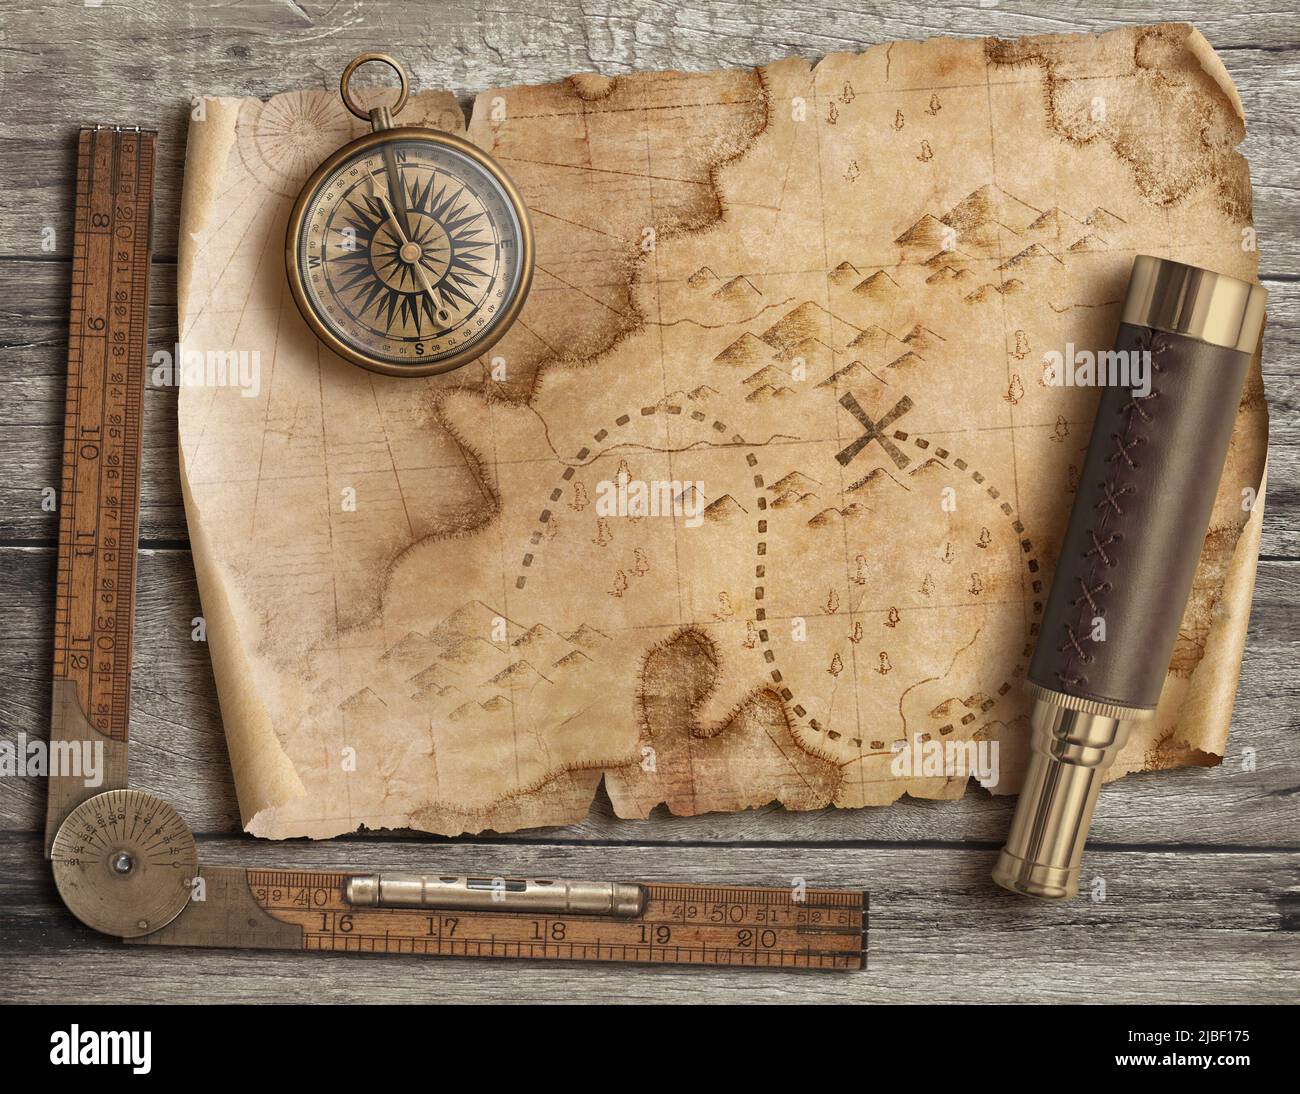 Antiguo mapa del tesoro roto con brújula y spyglass vista desde arriba. Concepto de la aventura y los viajes. Foto de stock